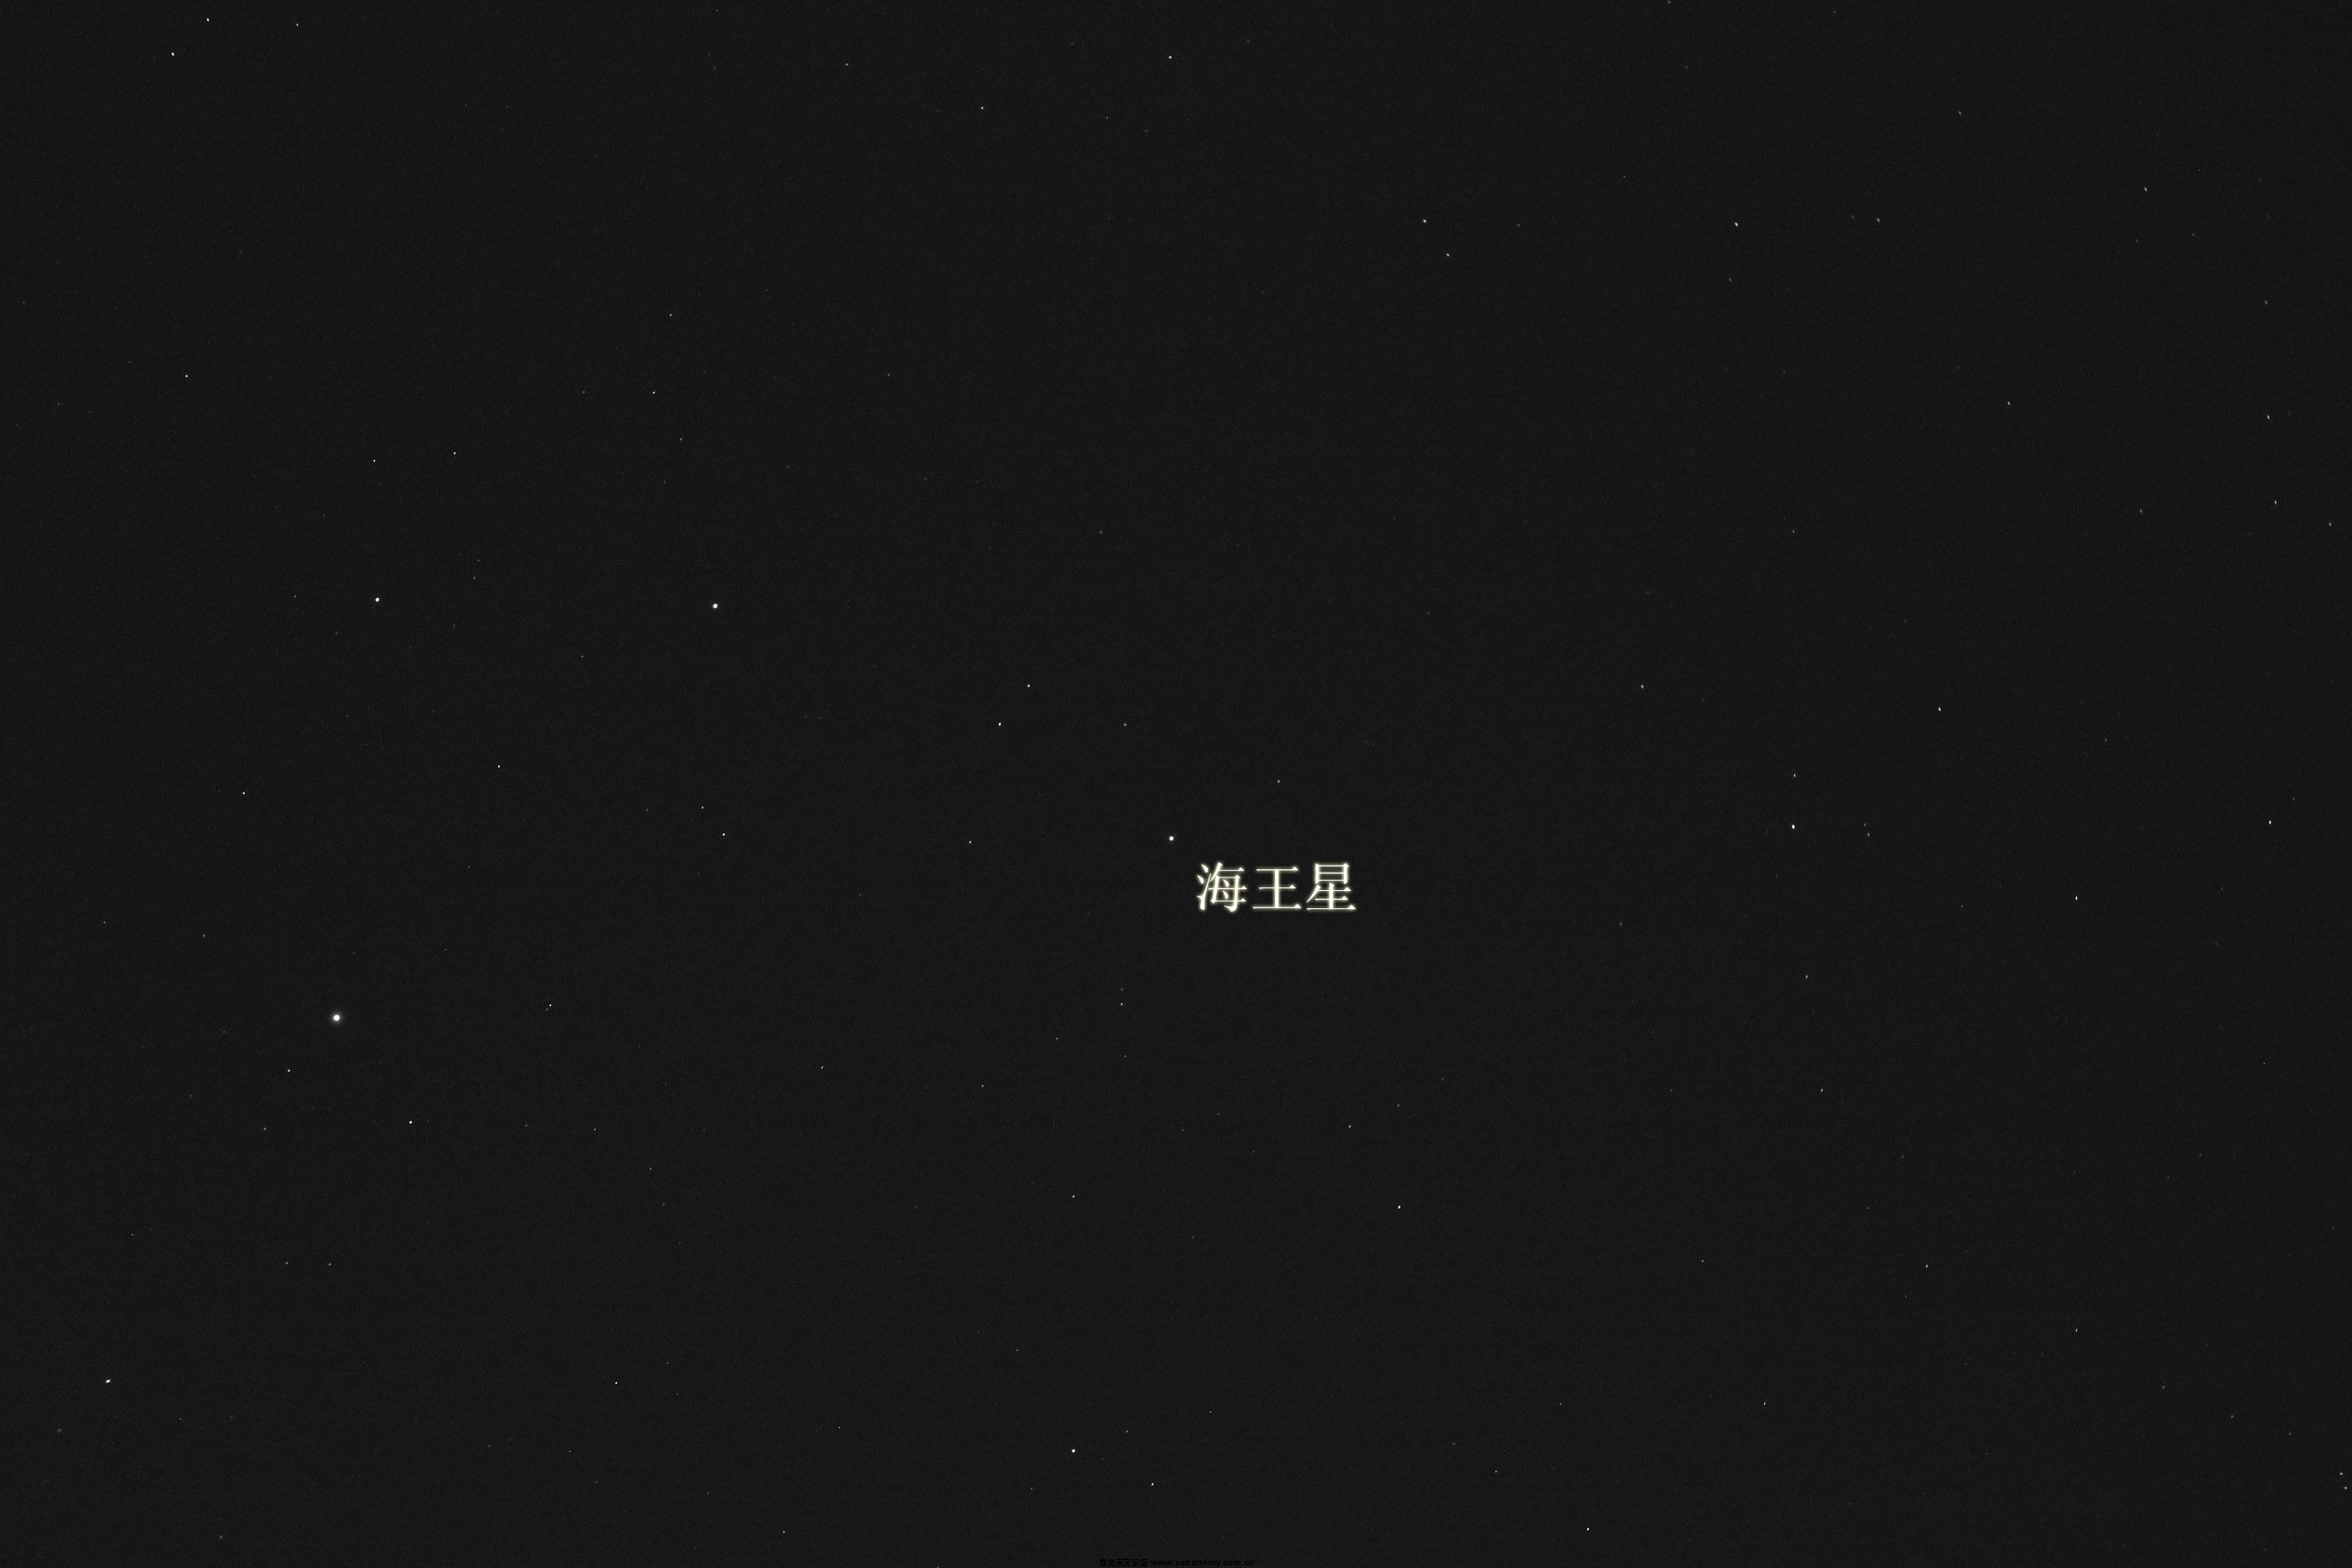 海王星1.jpg